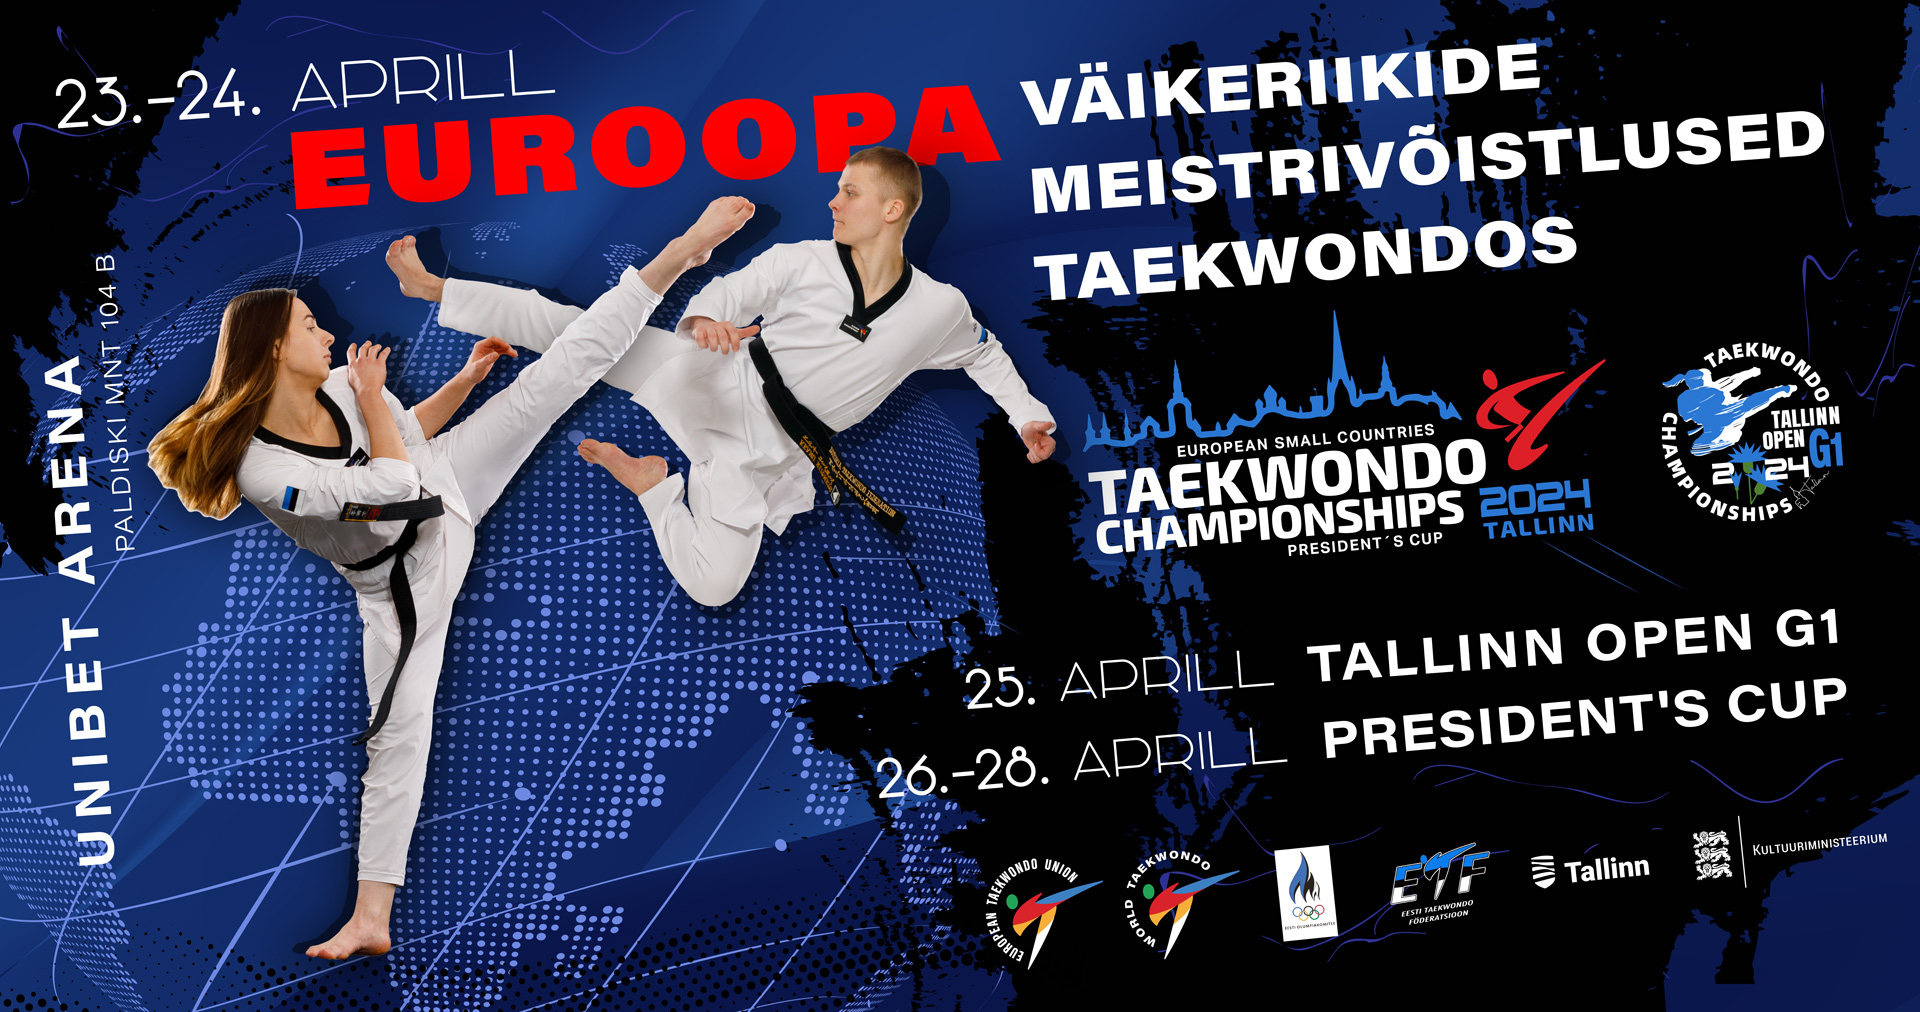 Tallinnas toimuvad Euroopa meistrivõistlused taekwondos, mis on suunatud väikestele riikidele. Ürituse raames peetakse ka Tallinn Open G1, mis on oluline etapp